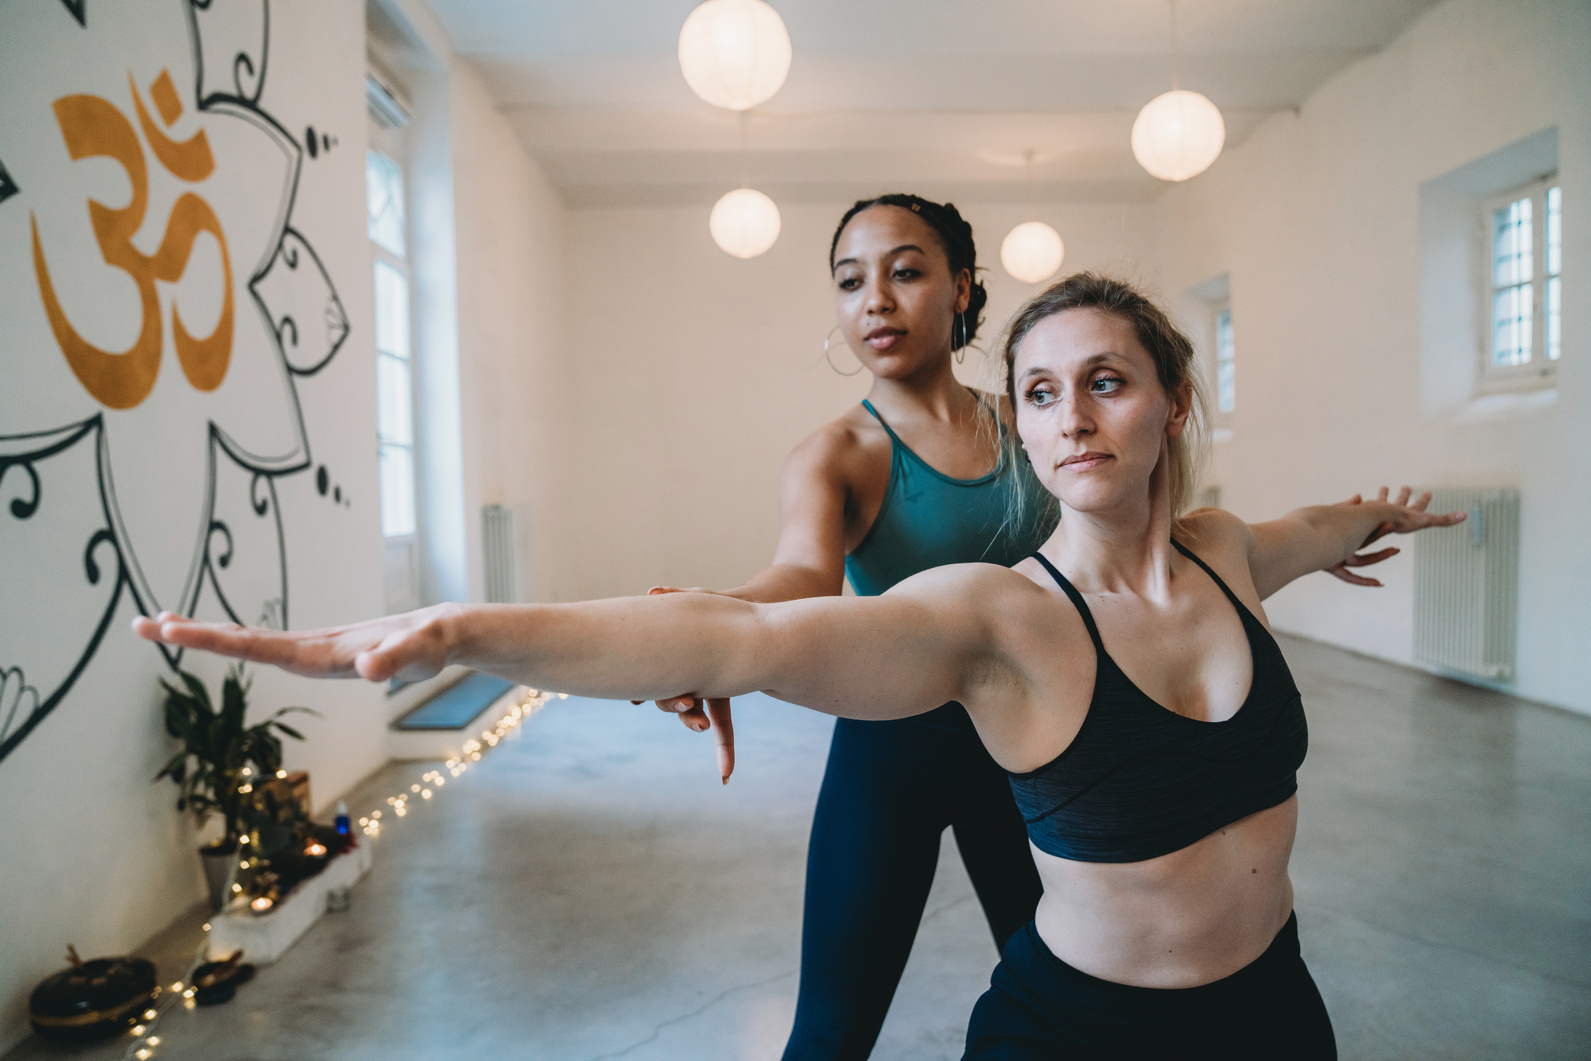 Private yoga lesson of a personal trainer in a yoga studio